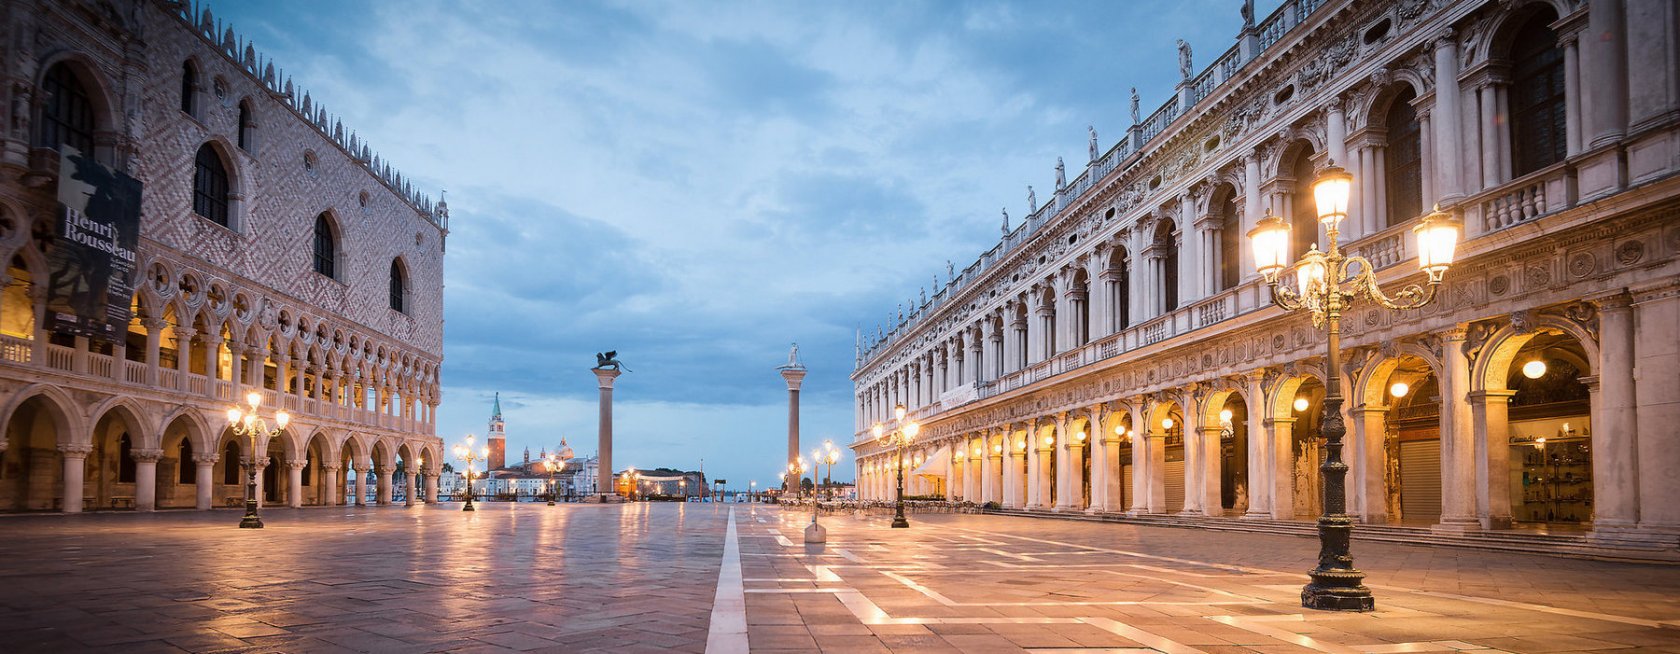 страны архитекура солнце площадь сан марко Италия Венеция загрузить